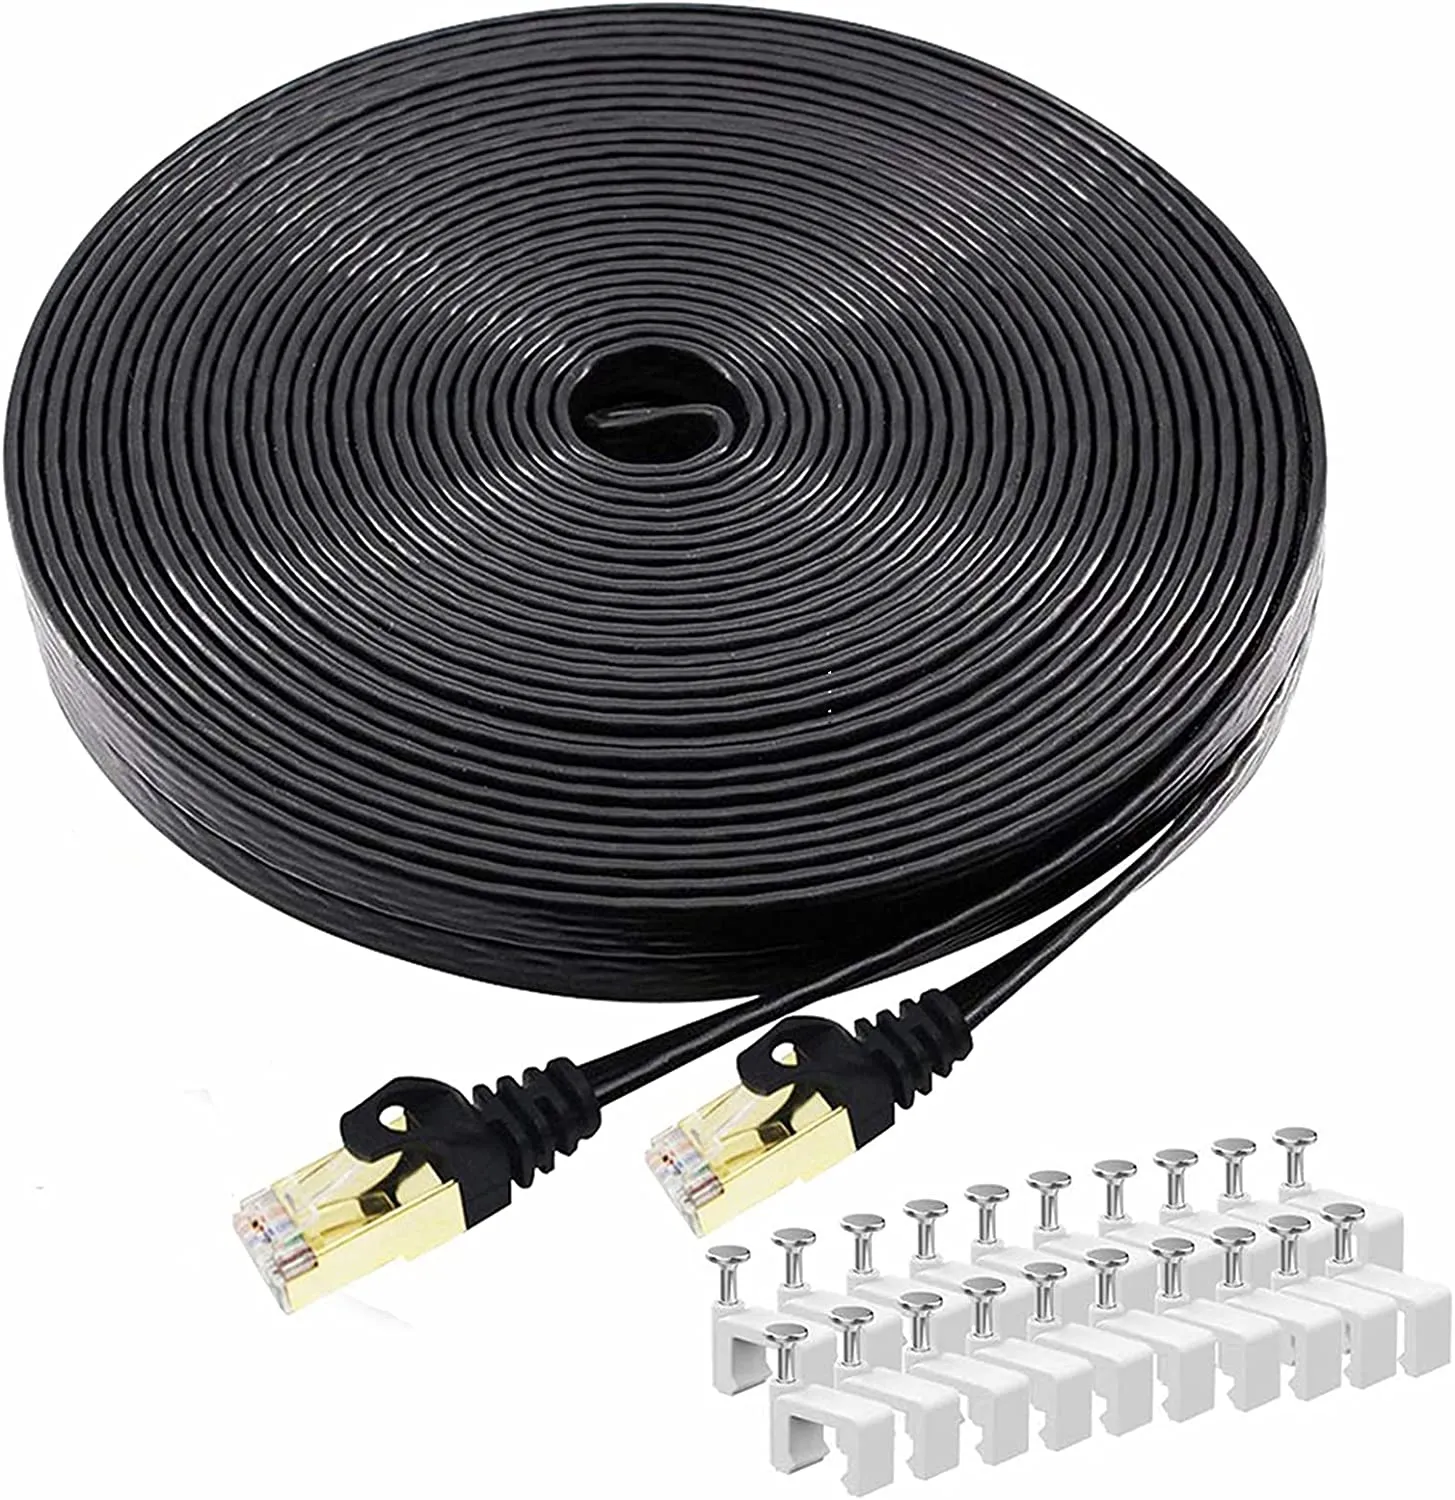 Cable plano Cat8 S/FTP, cable de conexión, conector de red Ethernet RJ45, cable de comunicación ultrafino